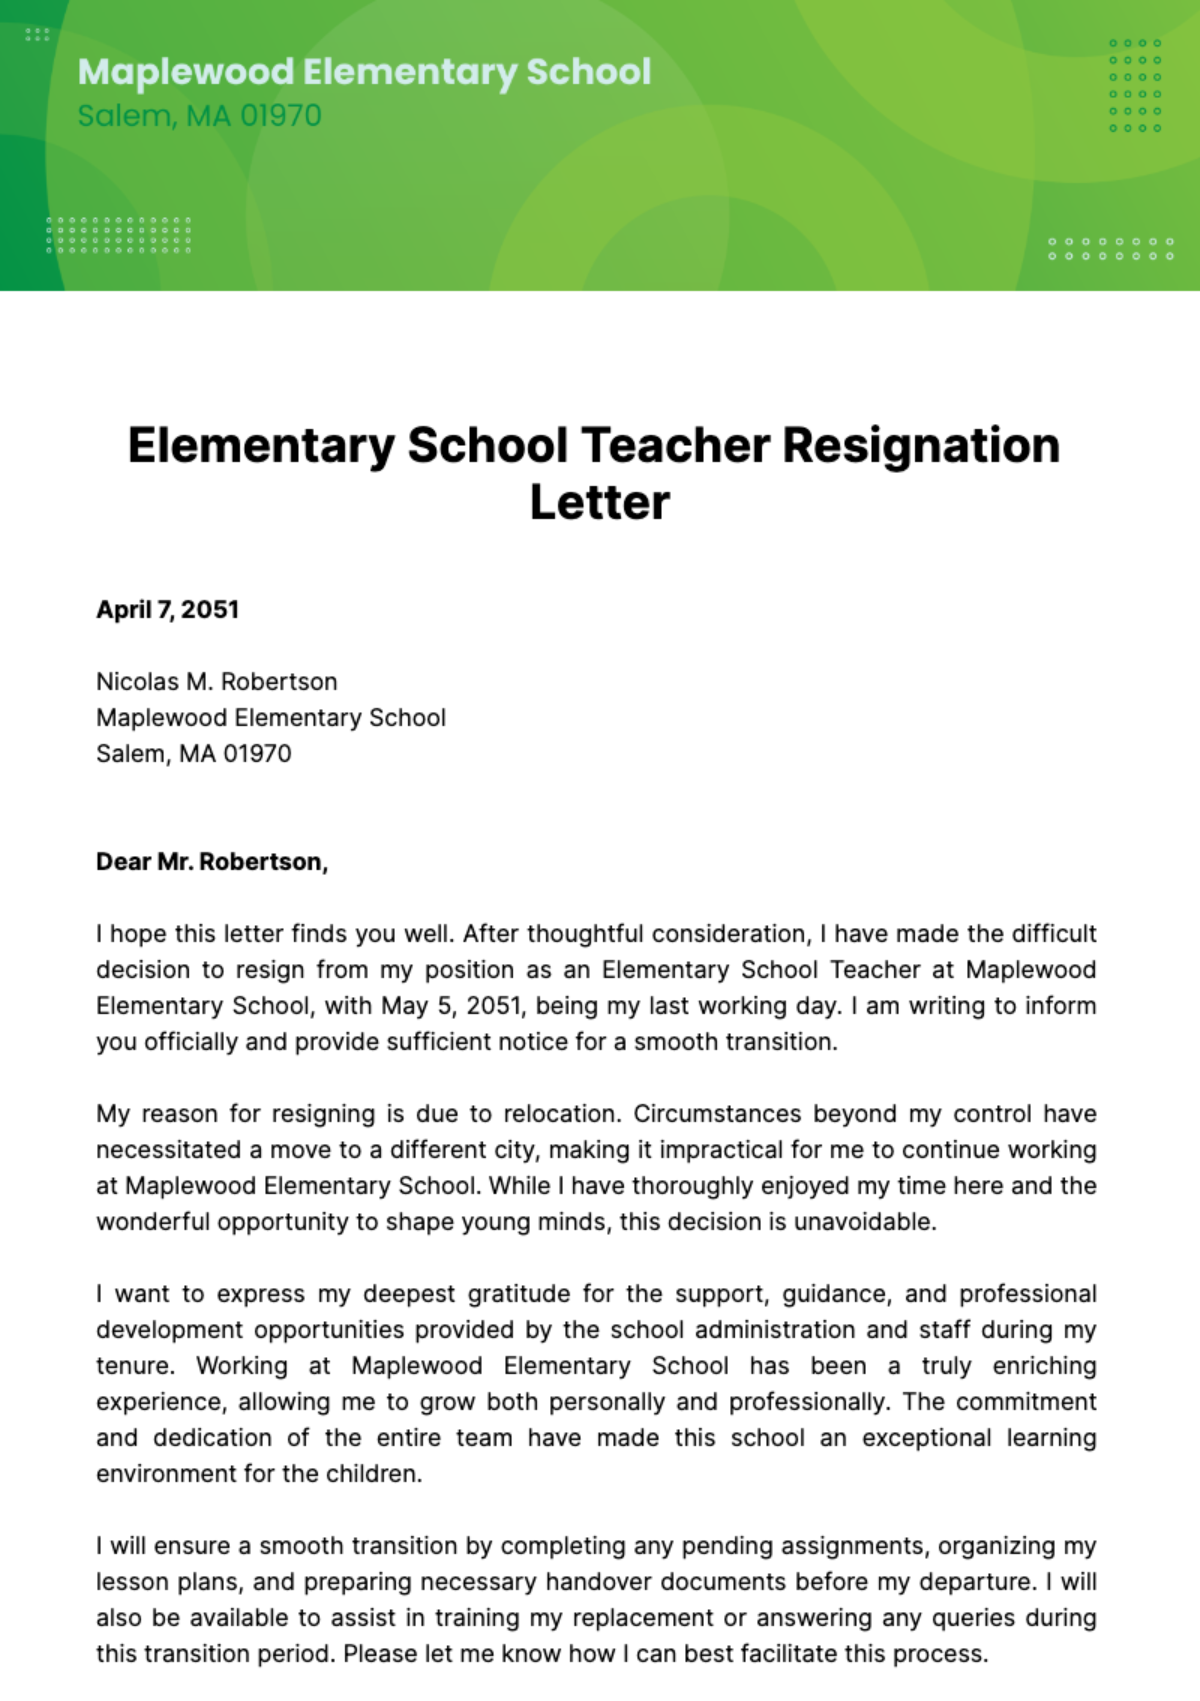 Elementary School Teacher Resignation Letter  Template